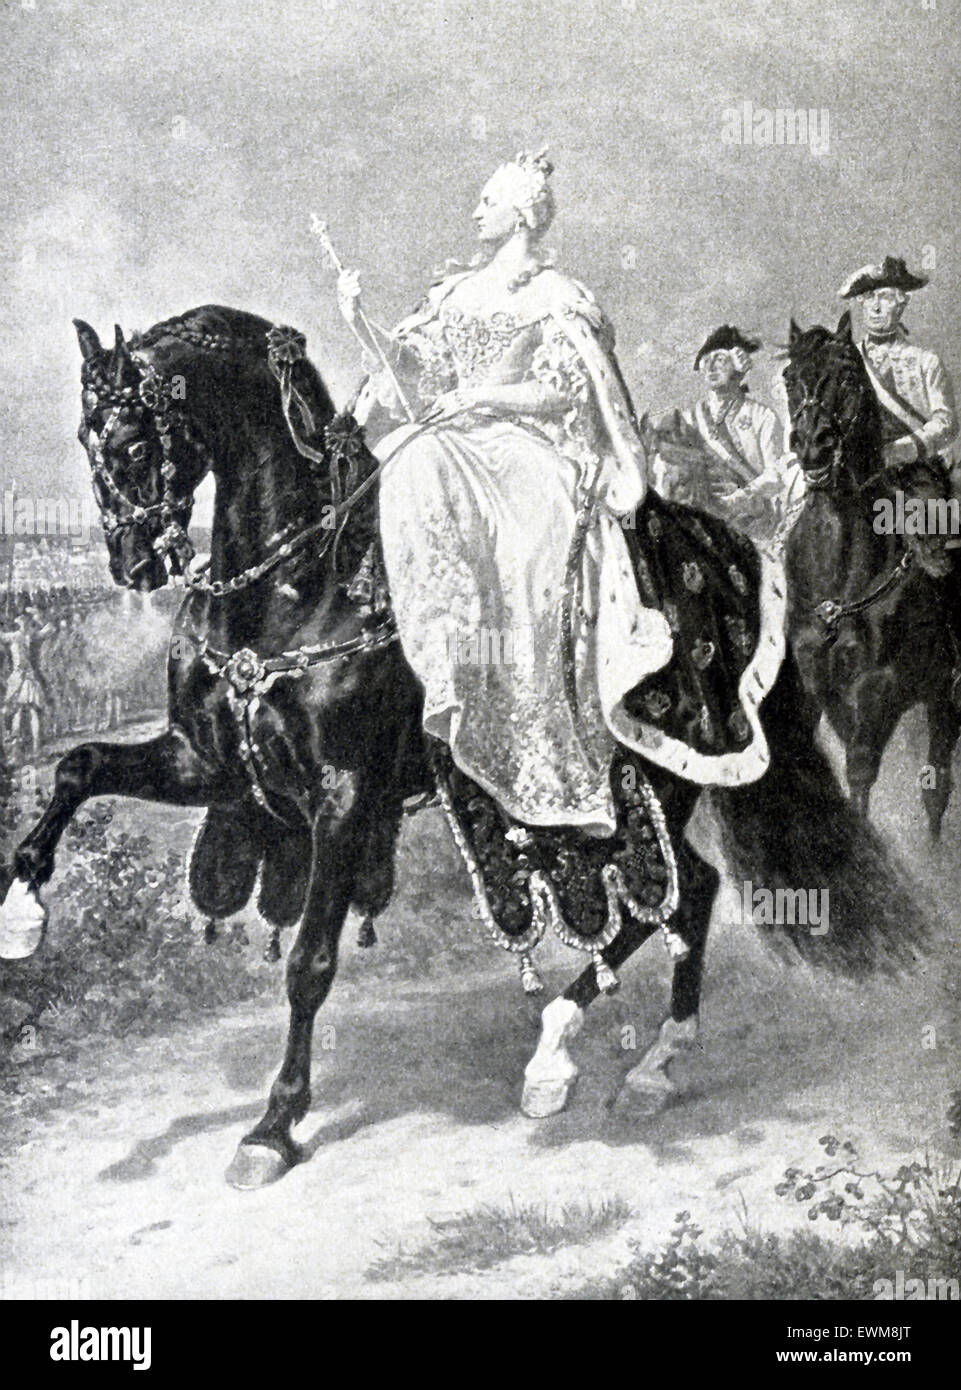 Qui possiamo vedere Maria Teresa Imperatrice d'Austria (1740-1780) rivedendo le truppe, da un dipinto del tedesco e la storica battaglia artista Wilhelm Camphausen. Foto Stock